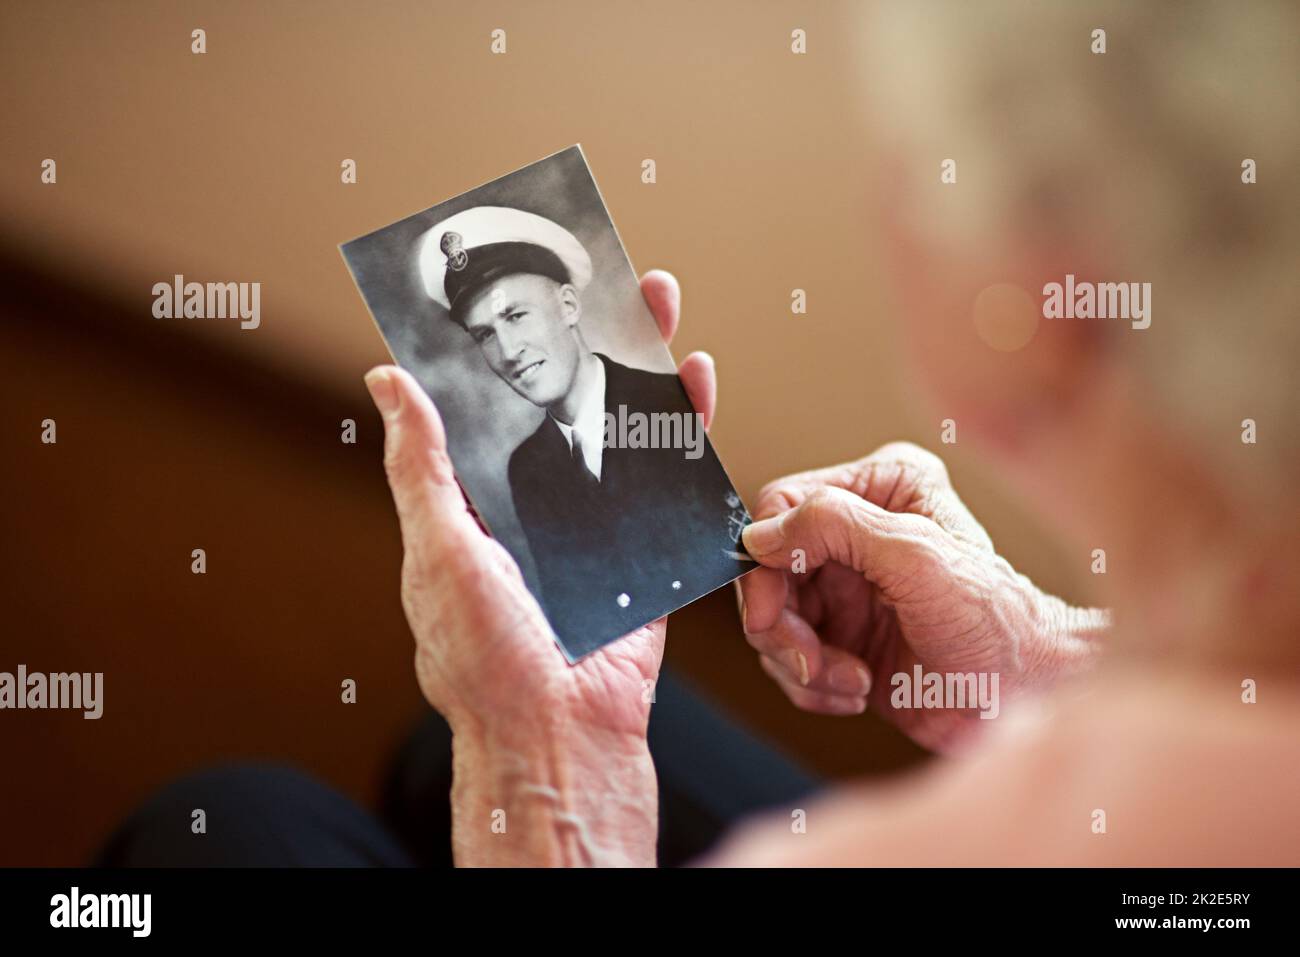 Er lebte ein Leben der Ehre. Eine beschnittene Aufnahme einer älteren Frau mit einem alten Schwarz-Weiß-Foto eines Mannes. Stockfoto